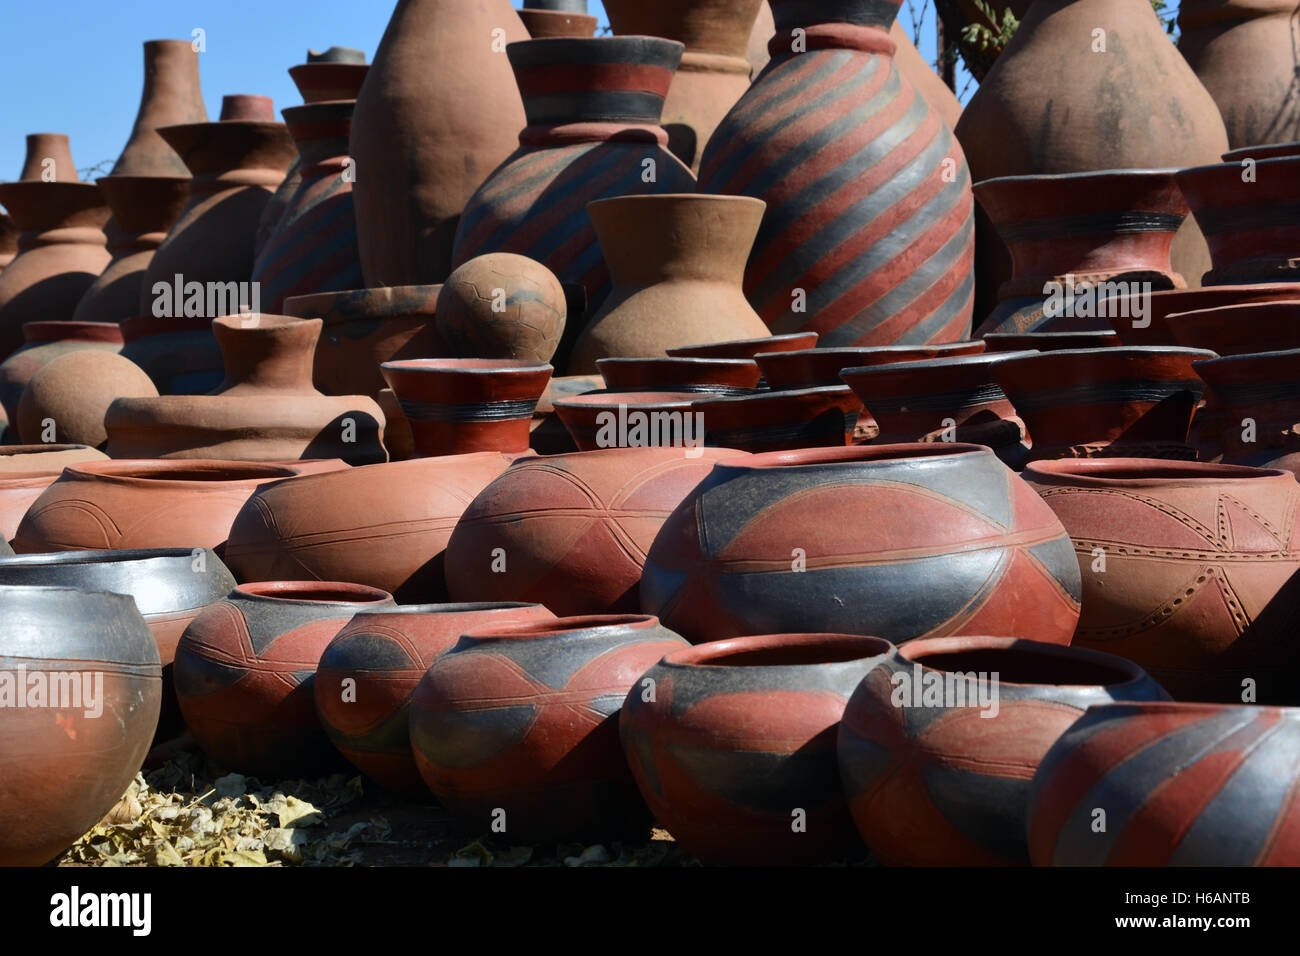 https://c8.alamy.com/compes/h6antb/las-ollas-de-barro-hechas-en-la-fabrica-de-ceramica-mukondeni-estan-disponibles-para-la-venta-a-los-turistas-y-locales-en-el-norte-de-la-region-de-limpopo-sudafrica-h6antb.jpg